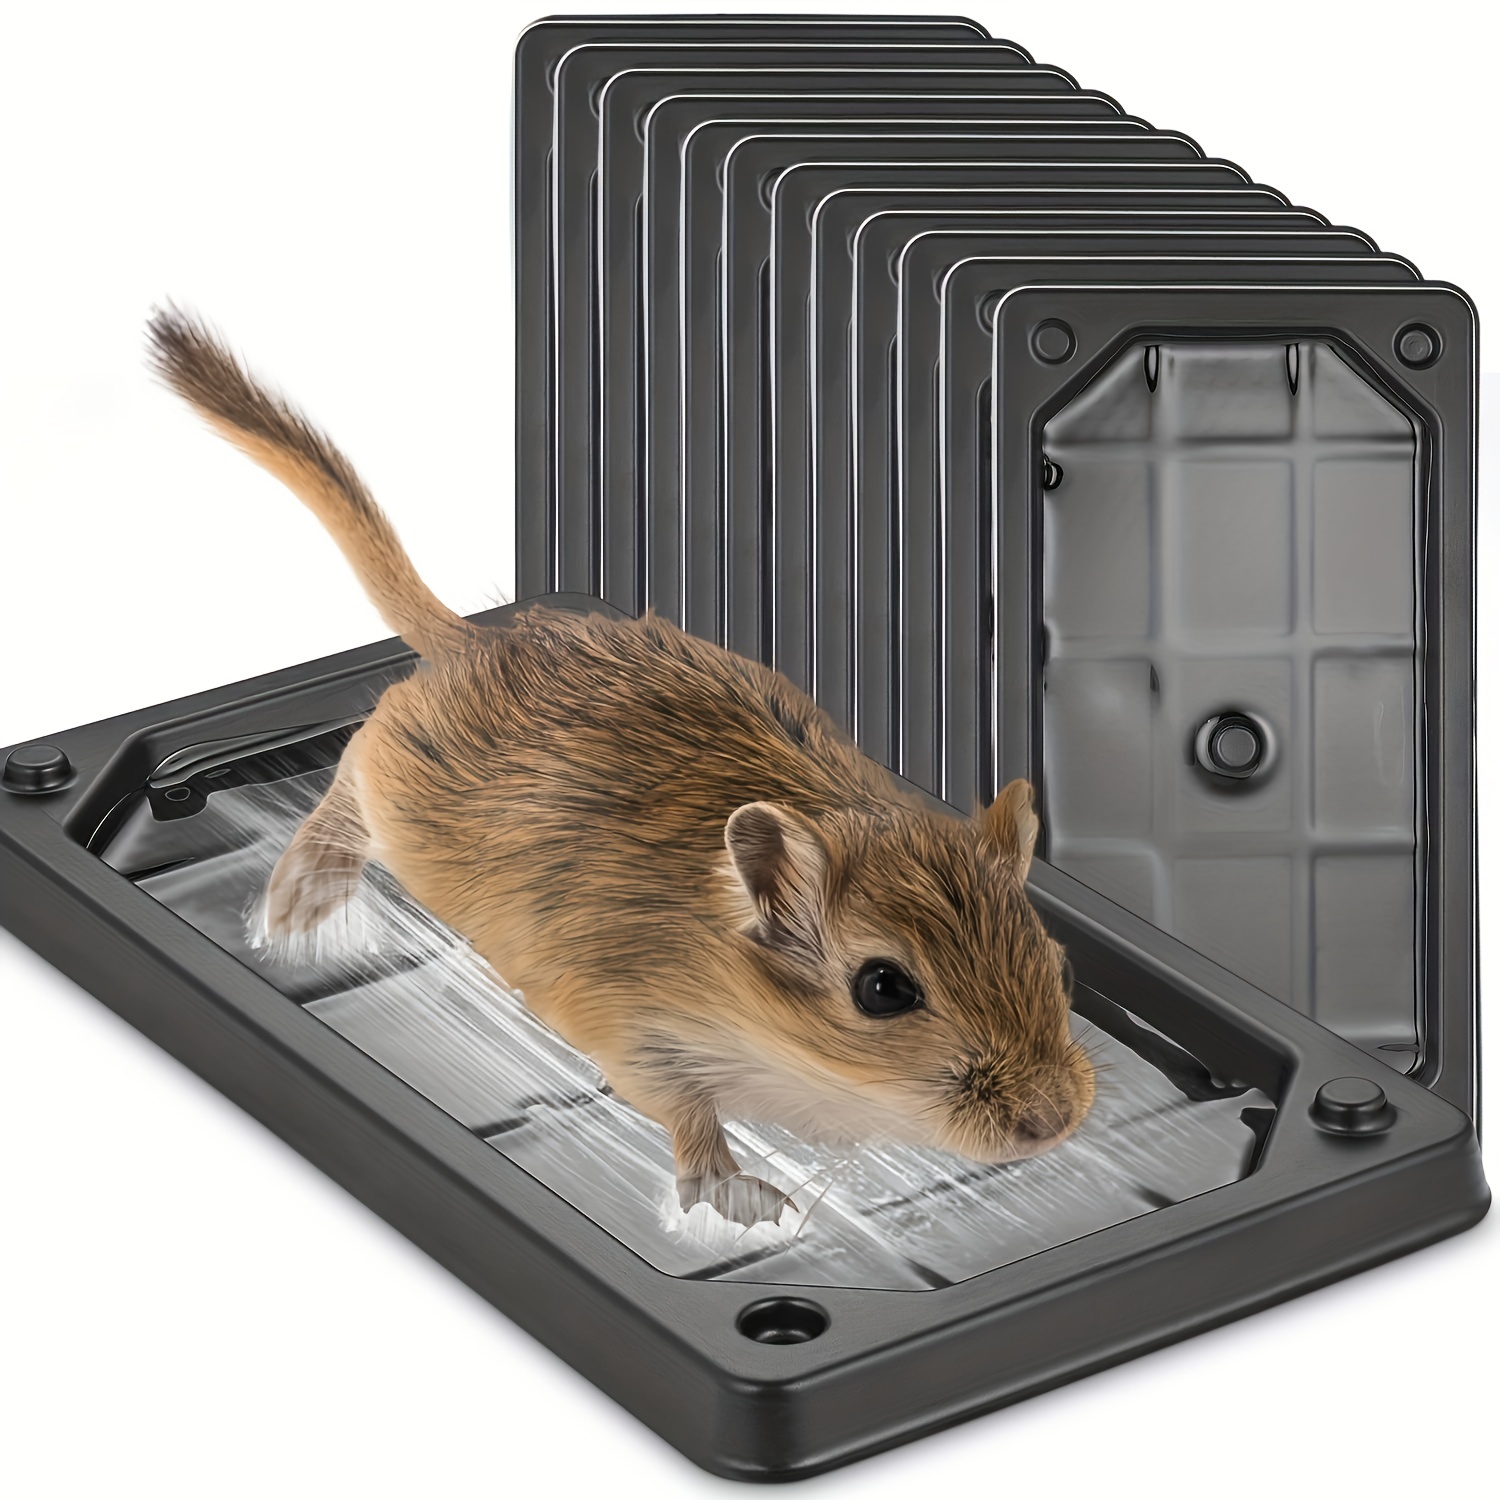 Mouse & Rat - Glue Traps - UrbanGroc